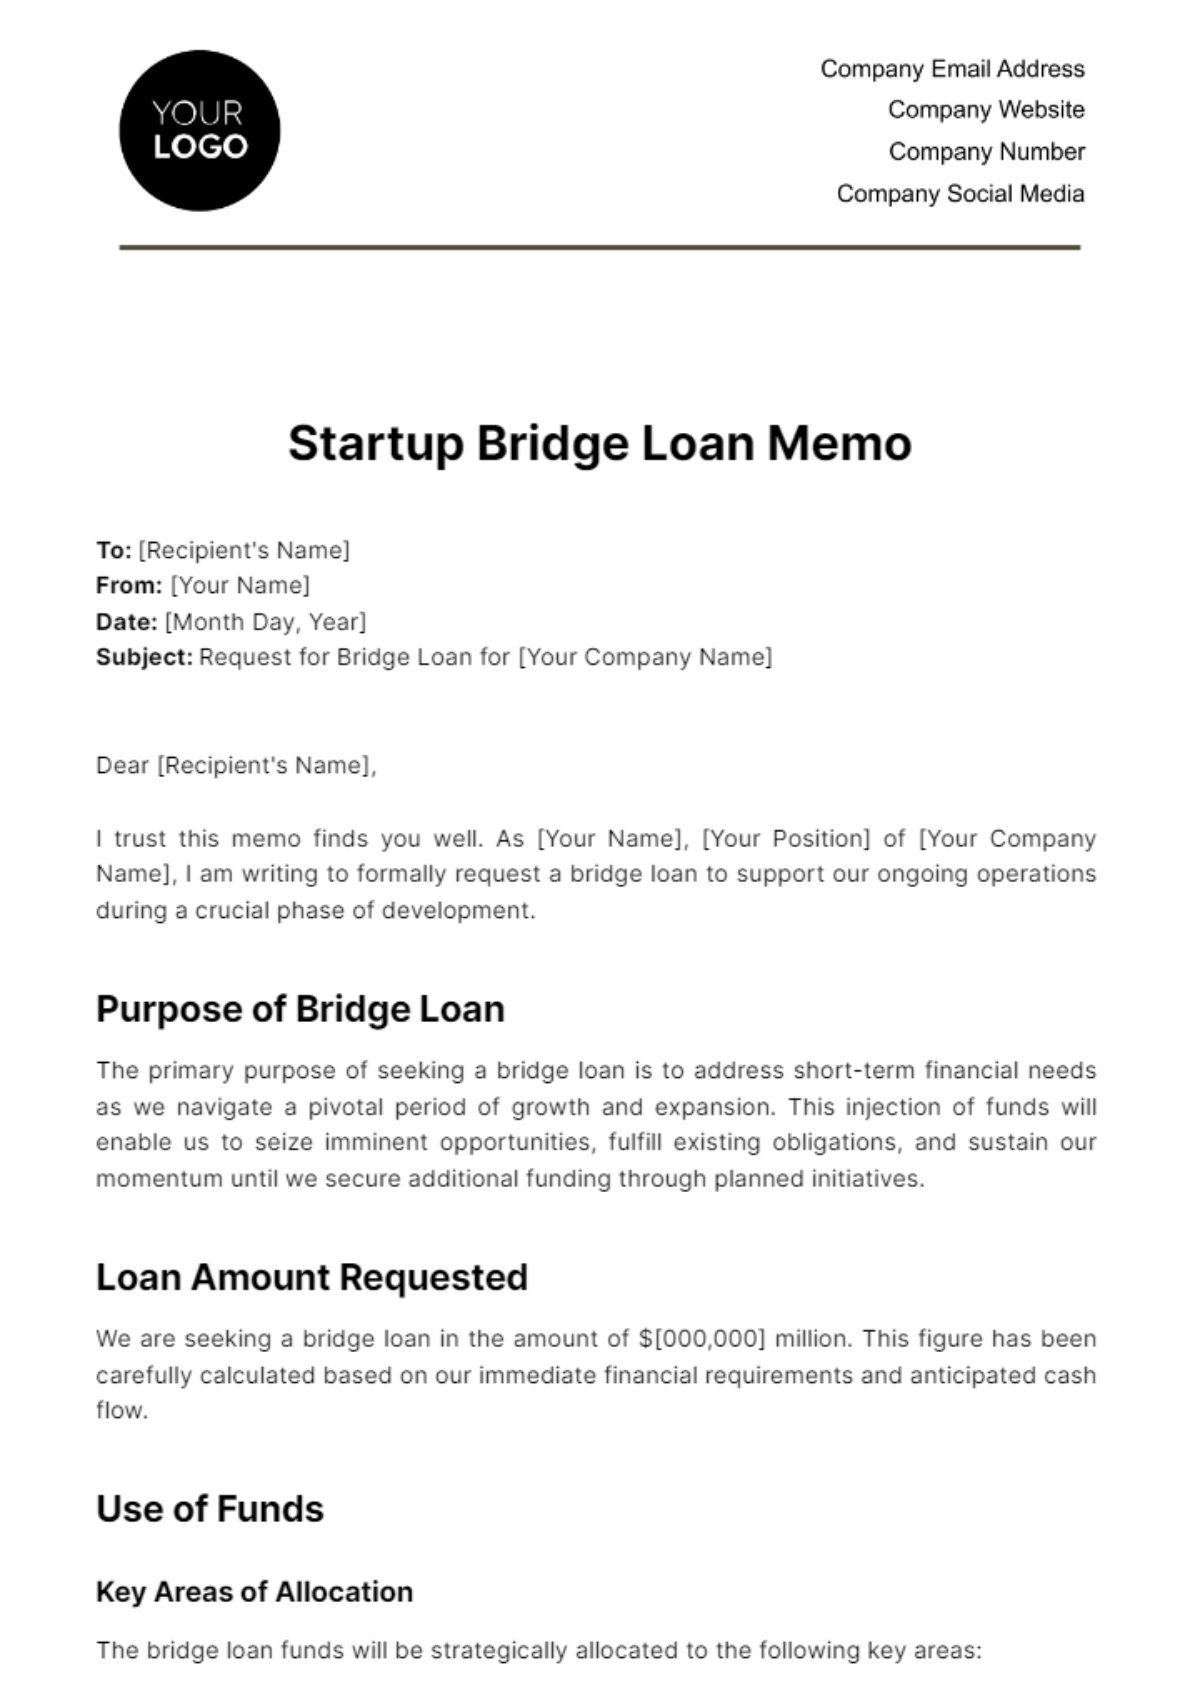 Free Startup Bridge Loan Memo Template